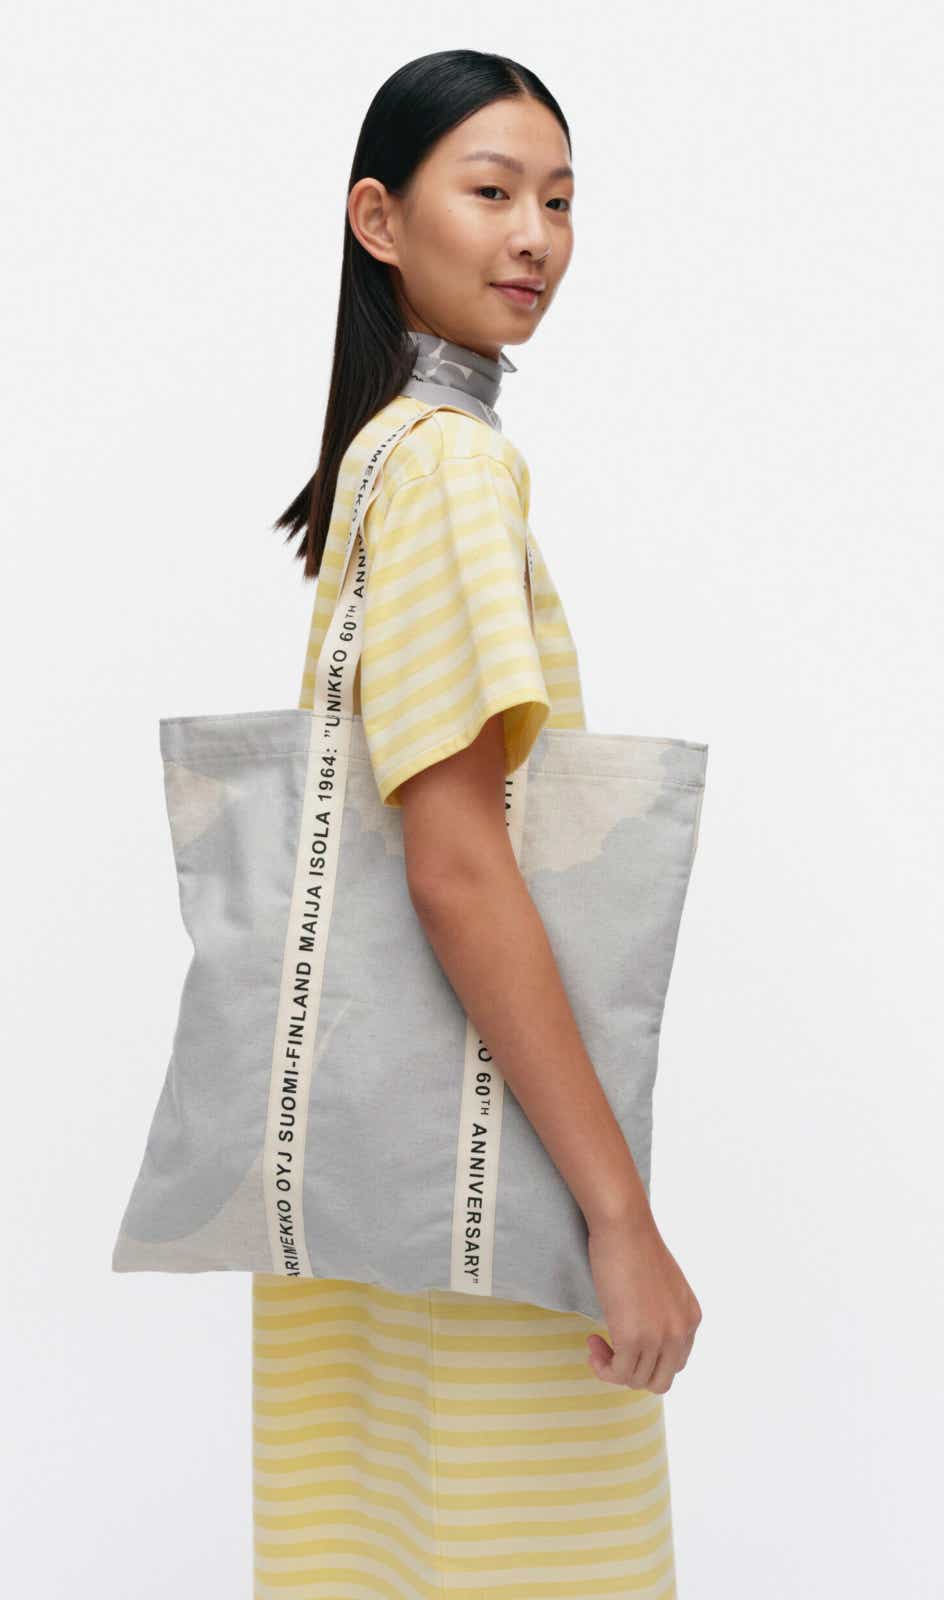 Carrier Midi Unikko tote bag – 43 x 41 cm – unbleached cotton and linen blend